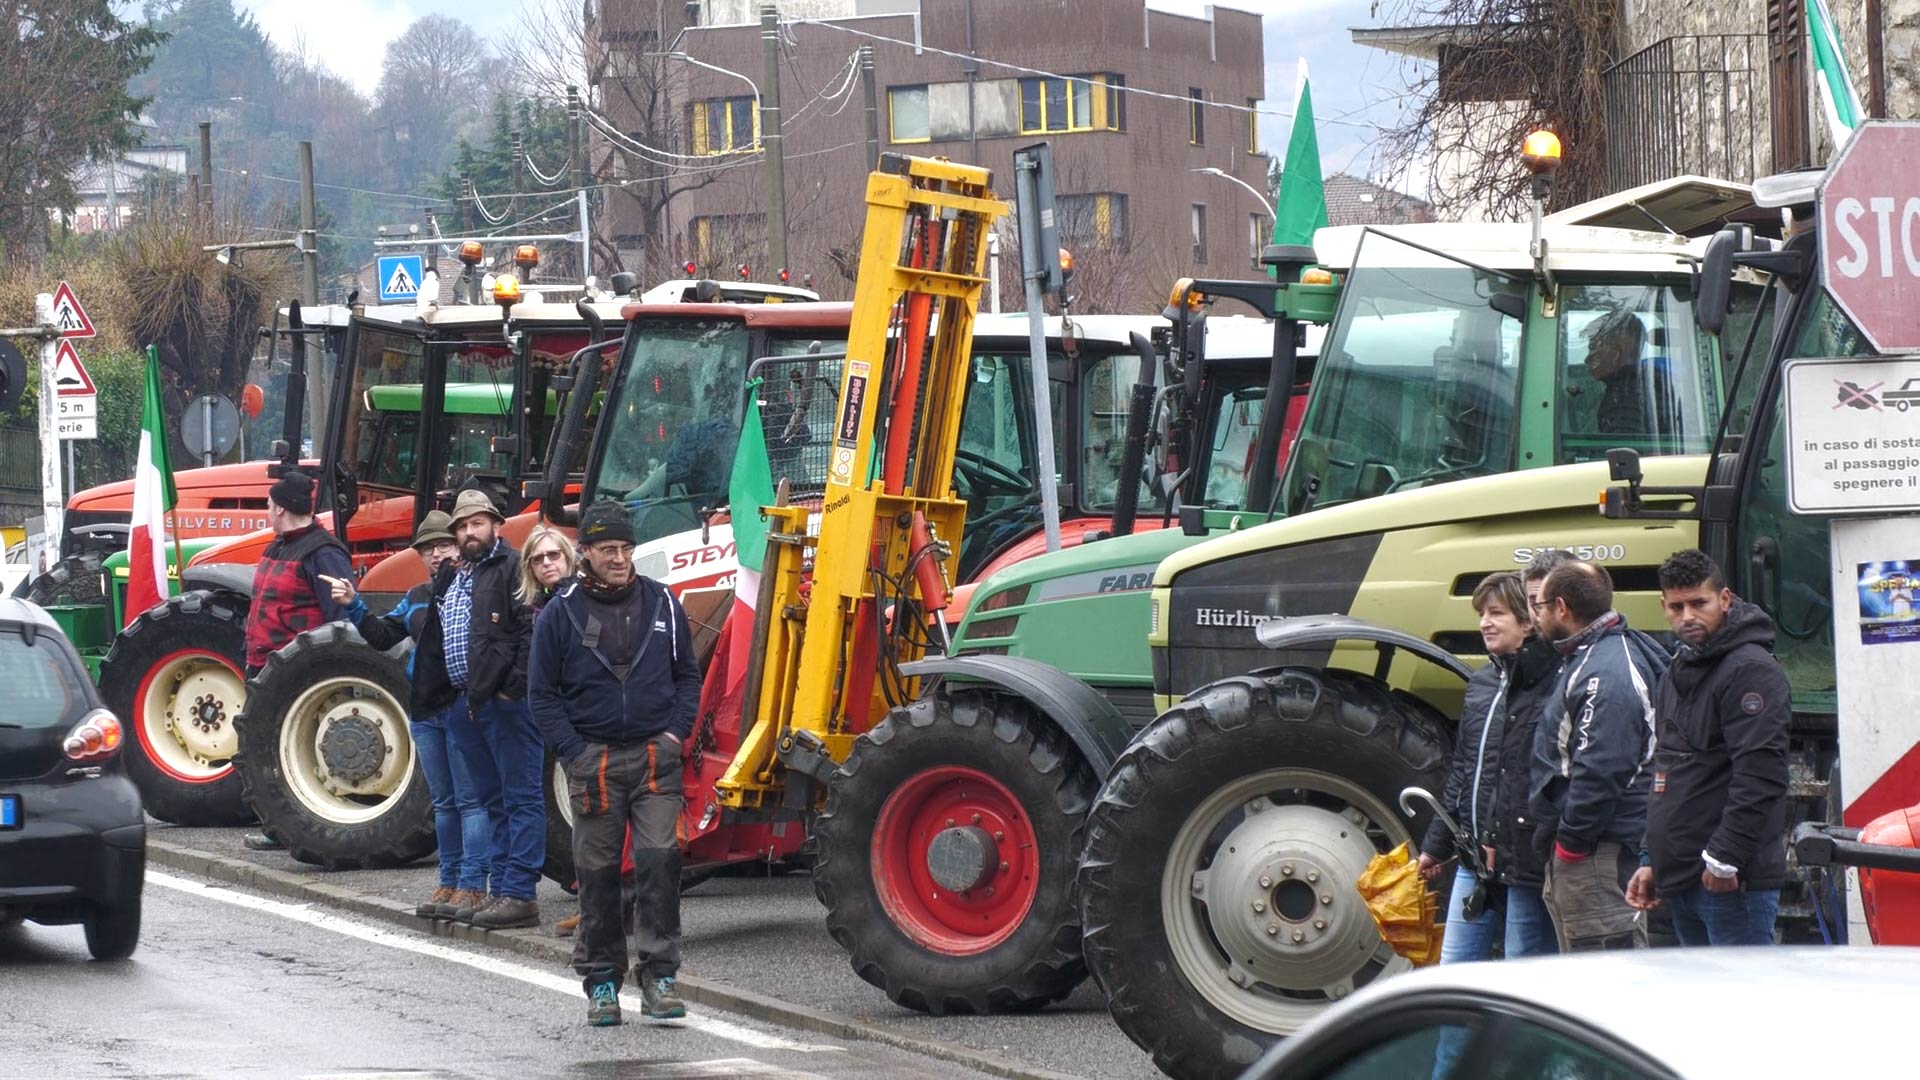 La protesta dei trattori arriva a Breno